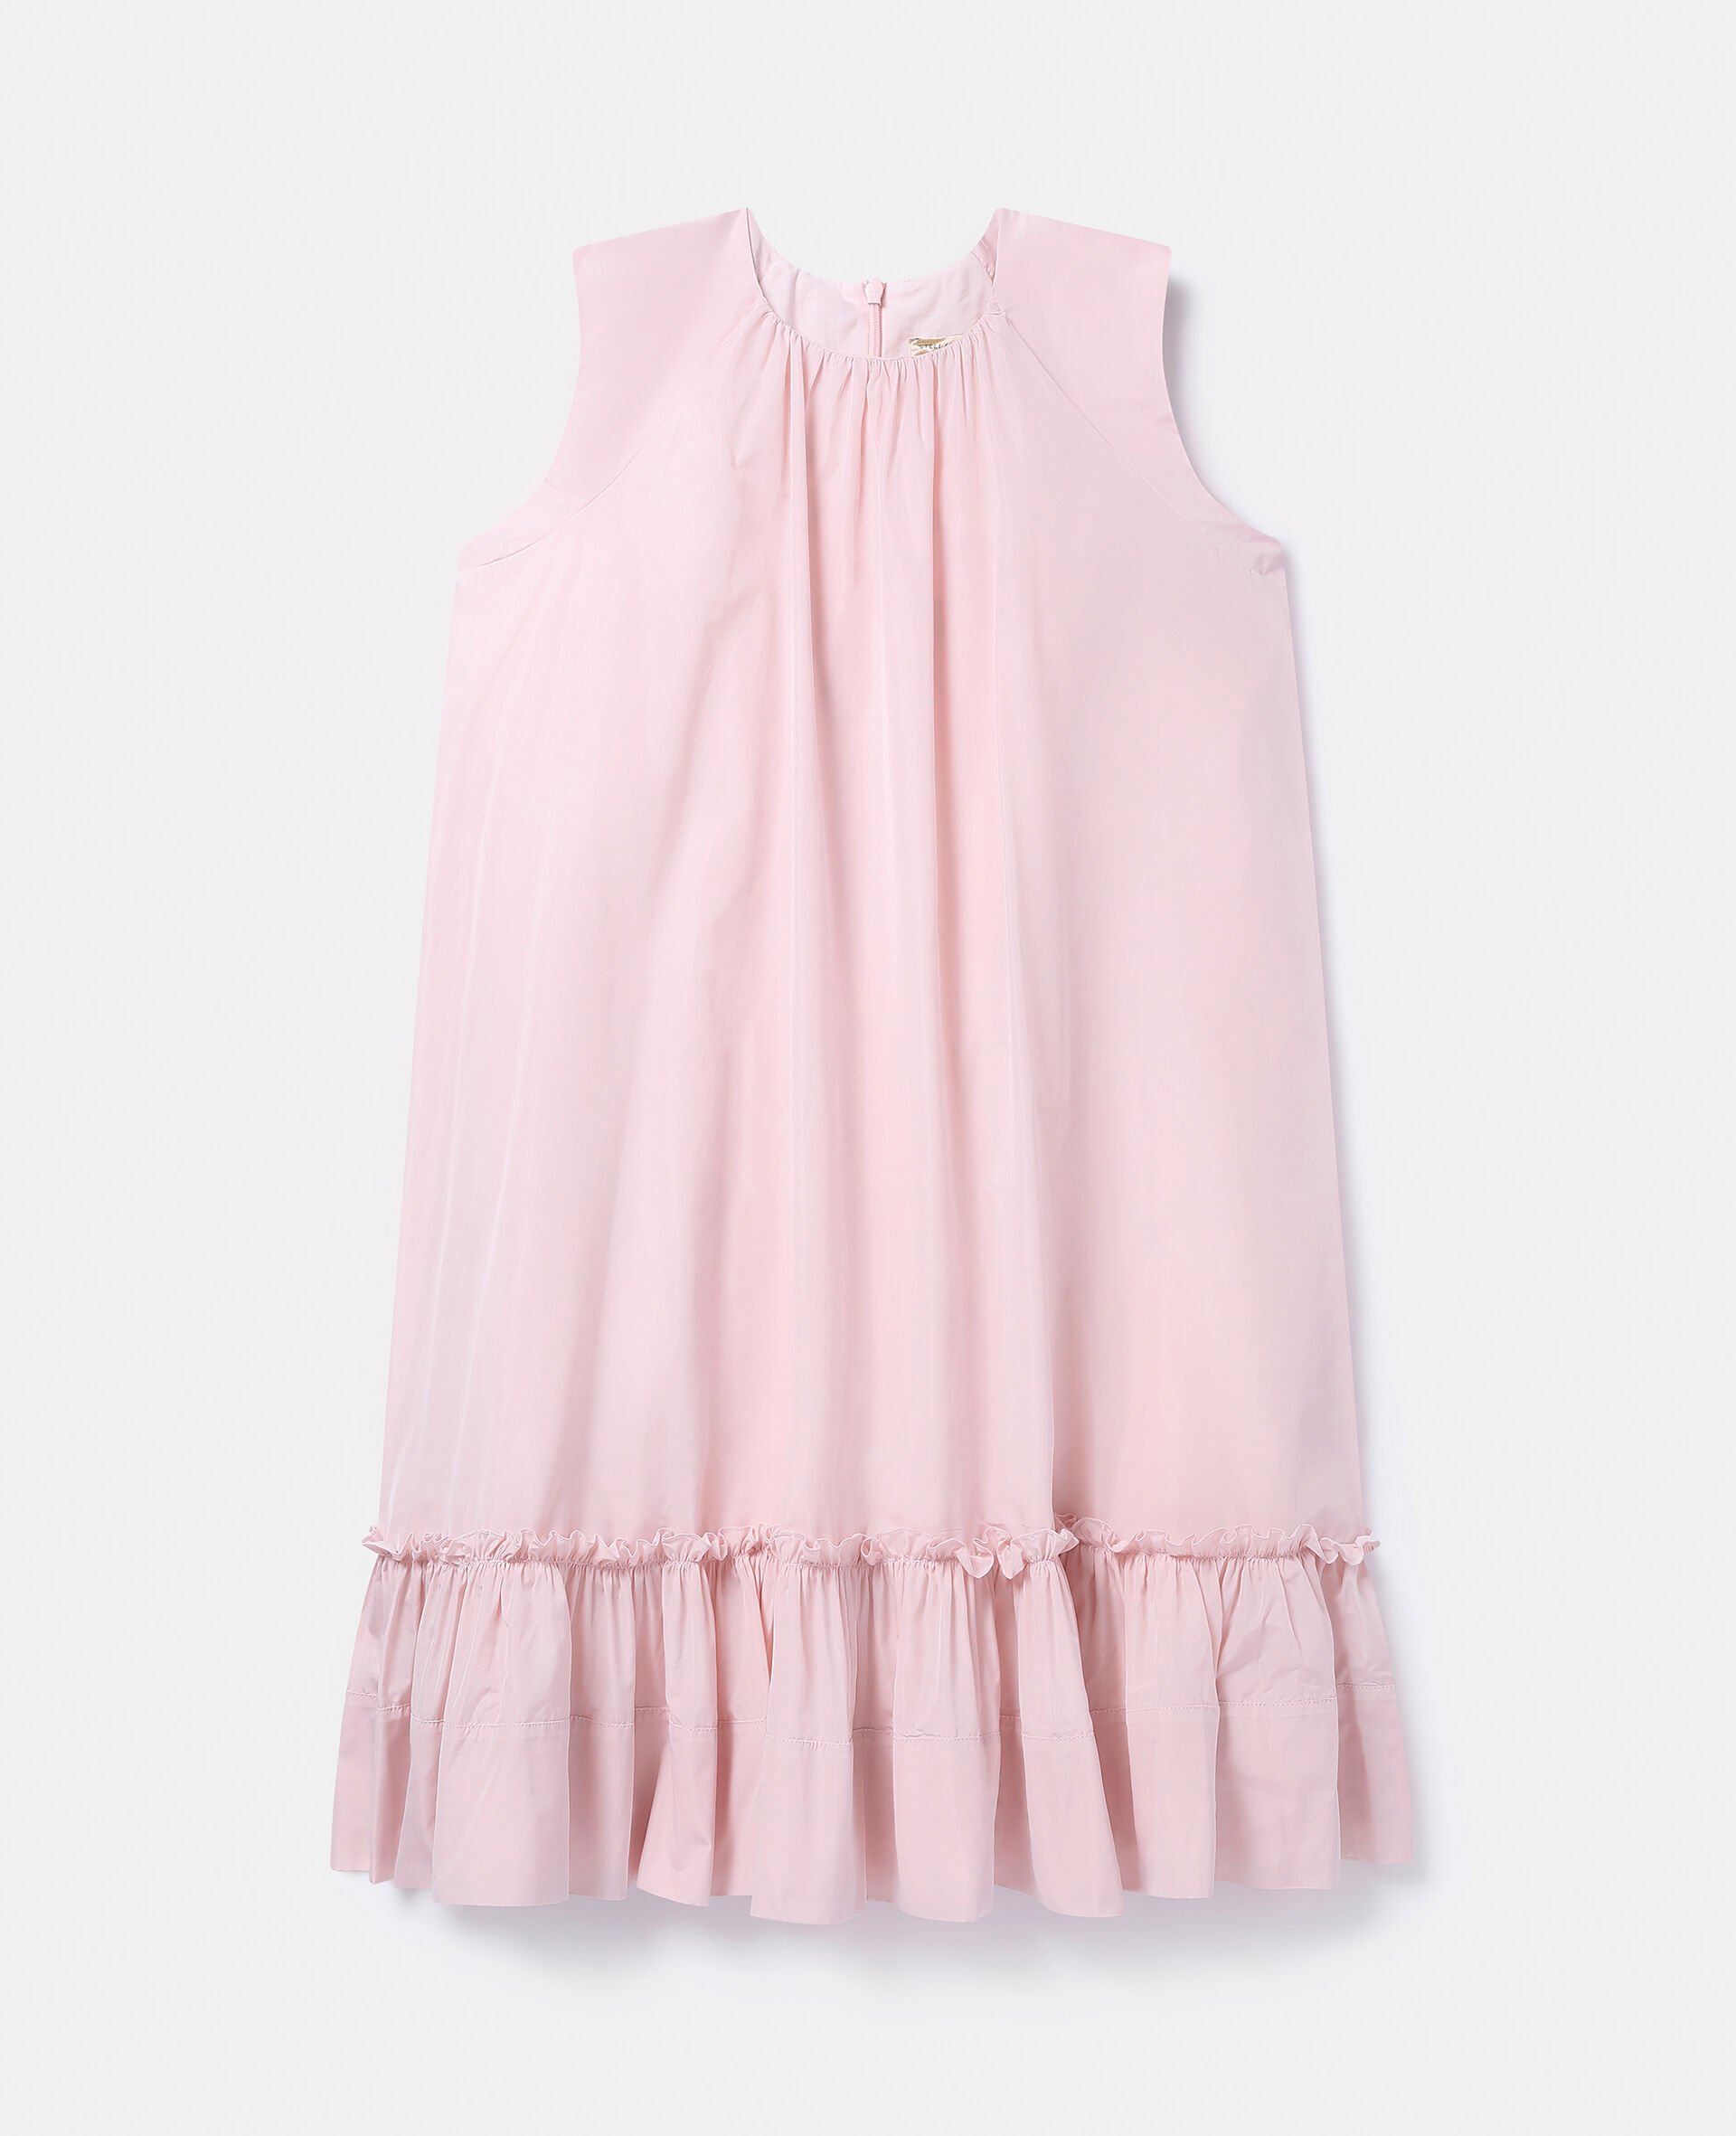 Ruffled Sleeveless Dress-Pink-large image number 0